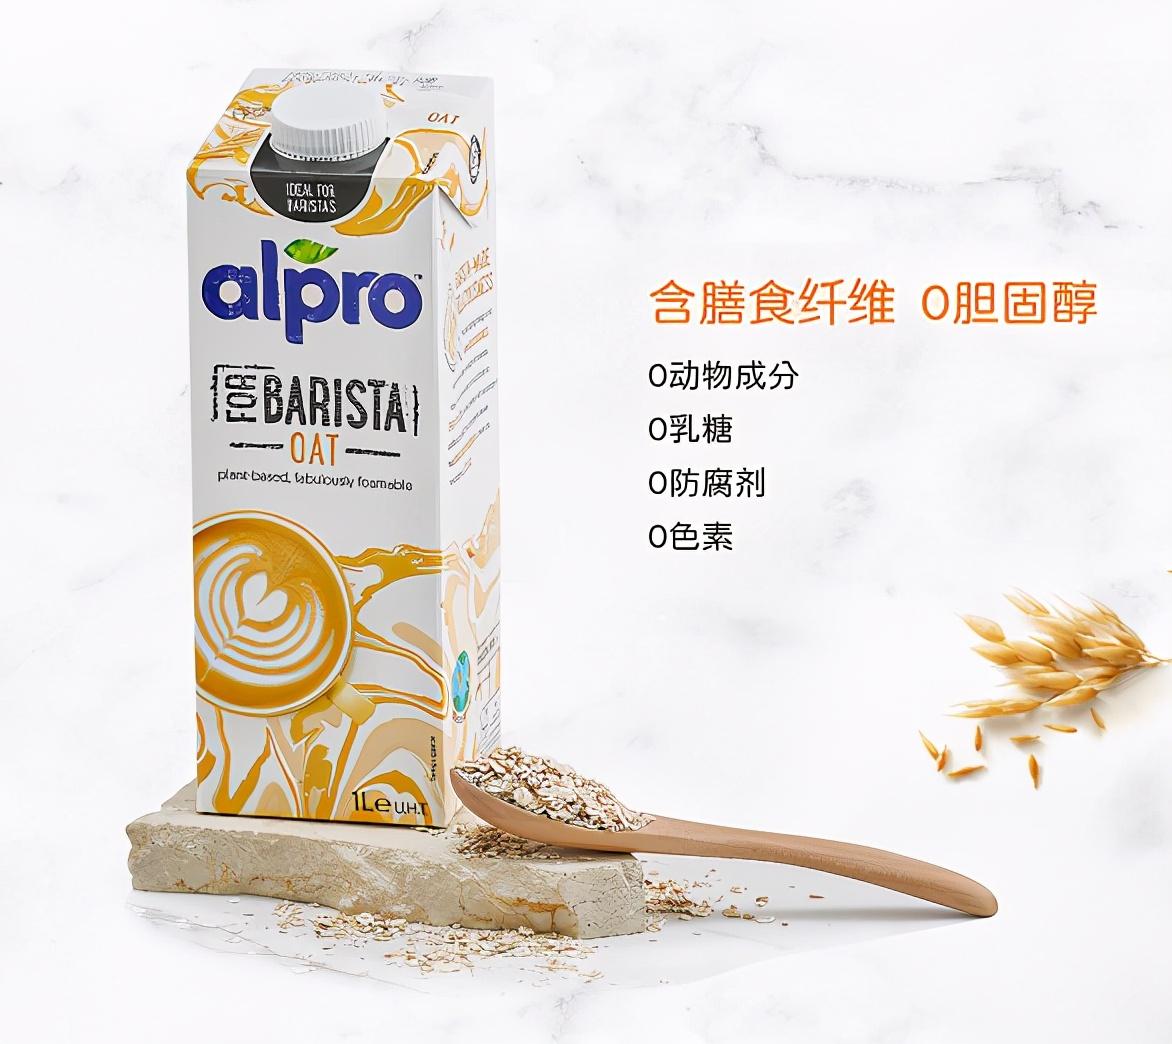 alpro所有产品都是植物基食品,原料来自非转基因巴旦木,燕麦,椰子